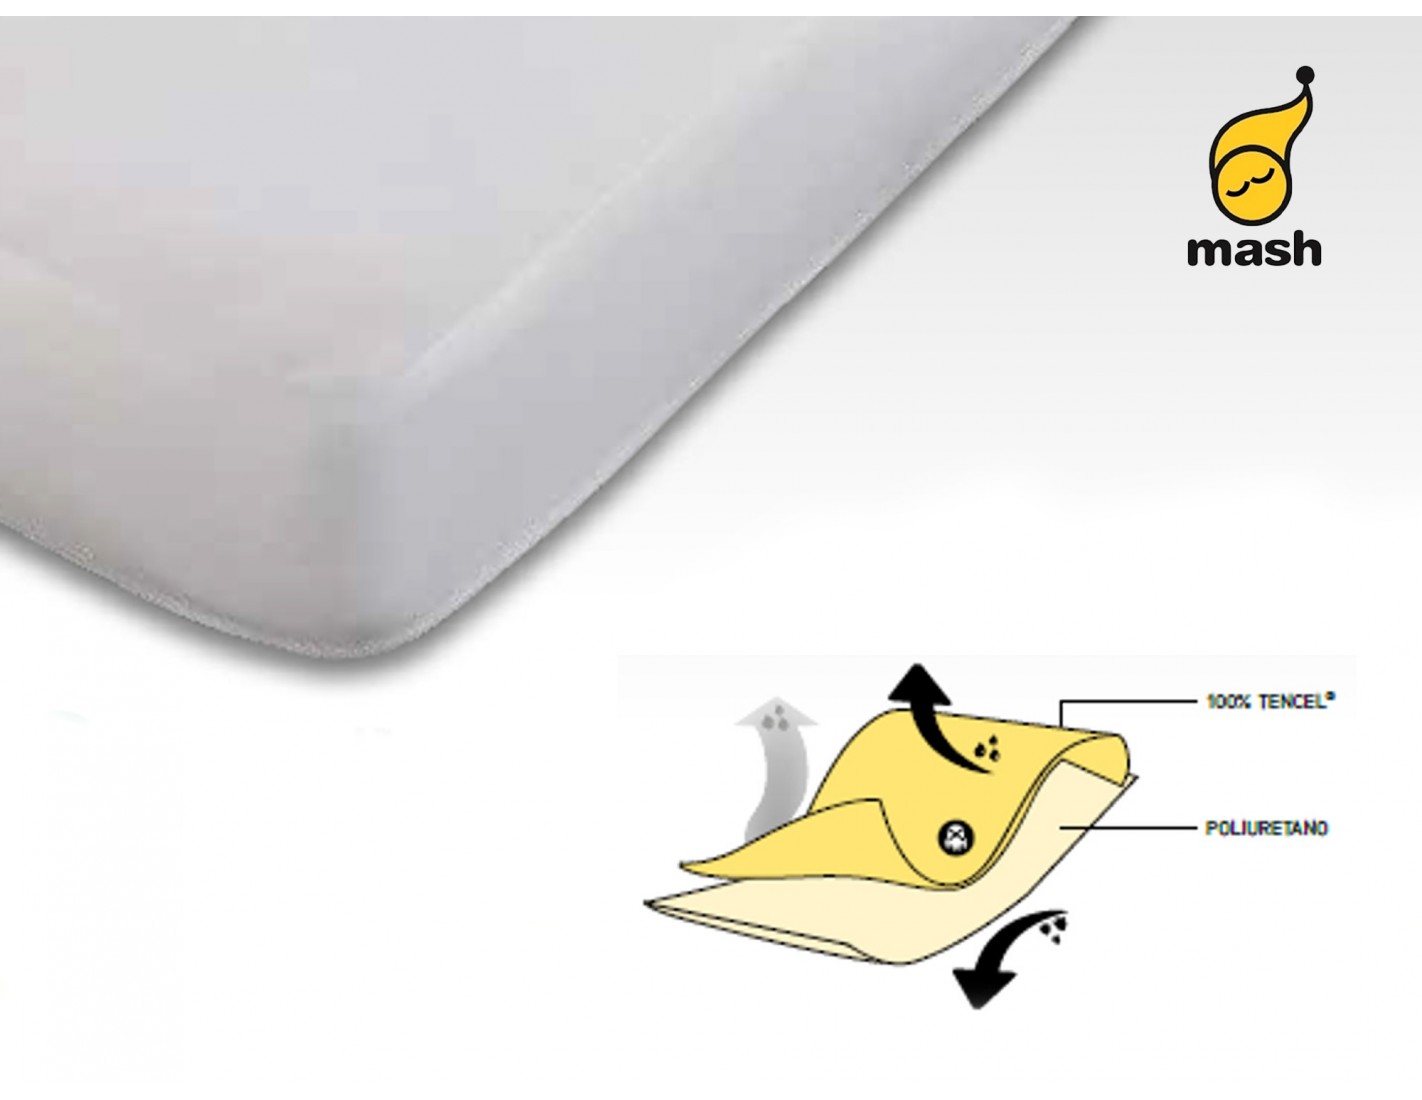 Protector de colchón impermeable fibra de Tencel 2 en 1